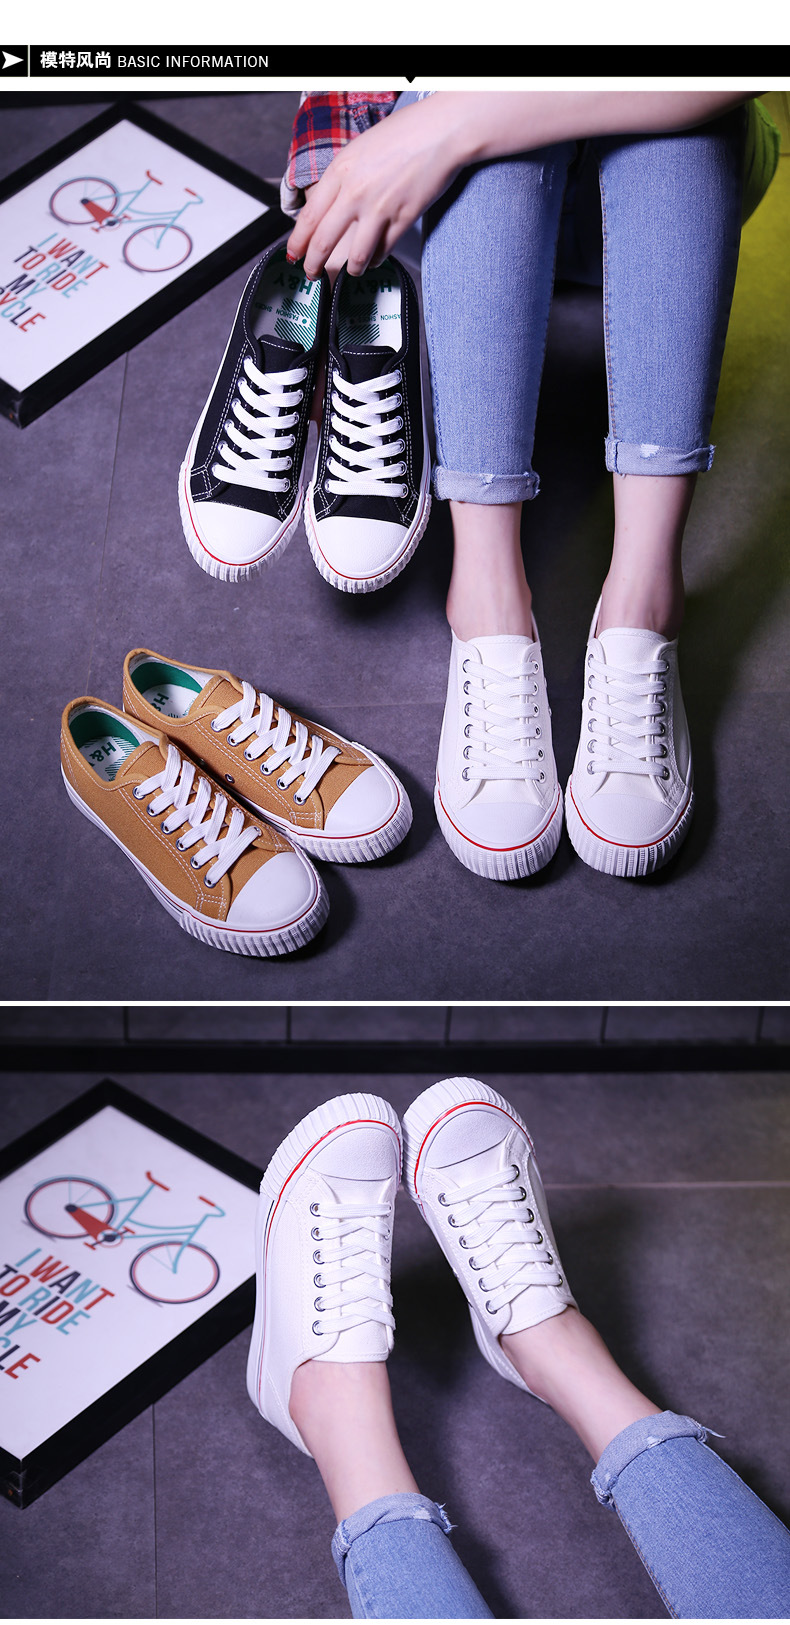 新款低帮系带帆布鞋纯色经典款女鞋韩版潮流日常休闲学生鞋板鞋示例图16